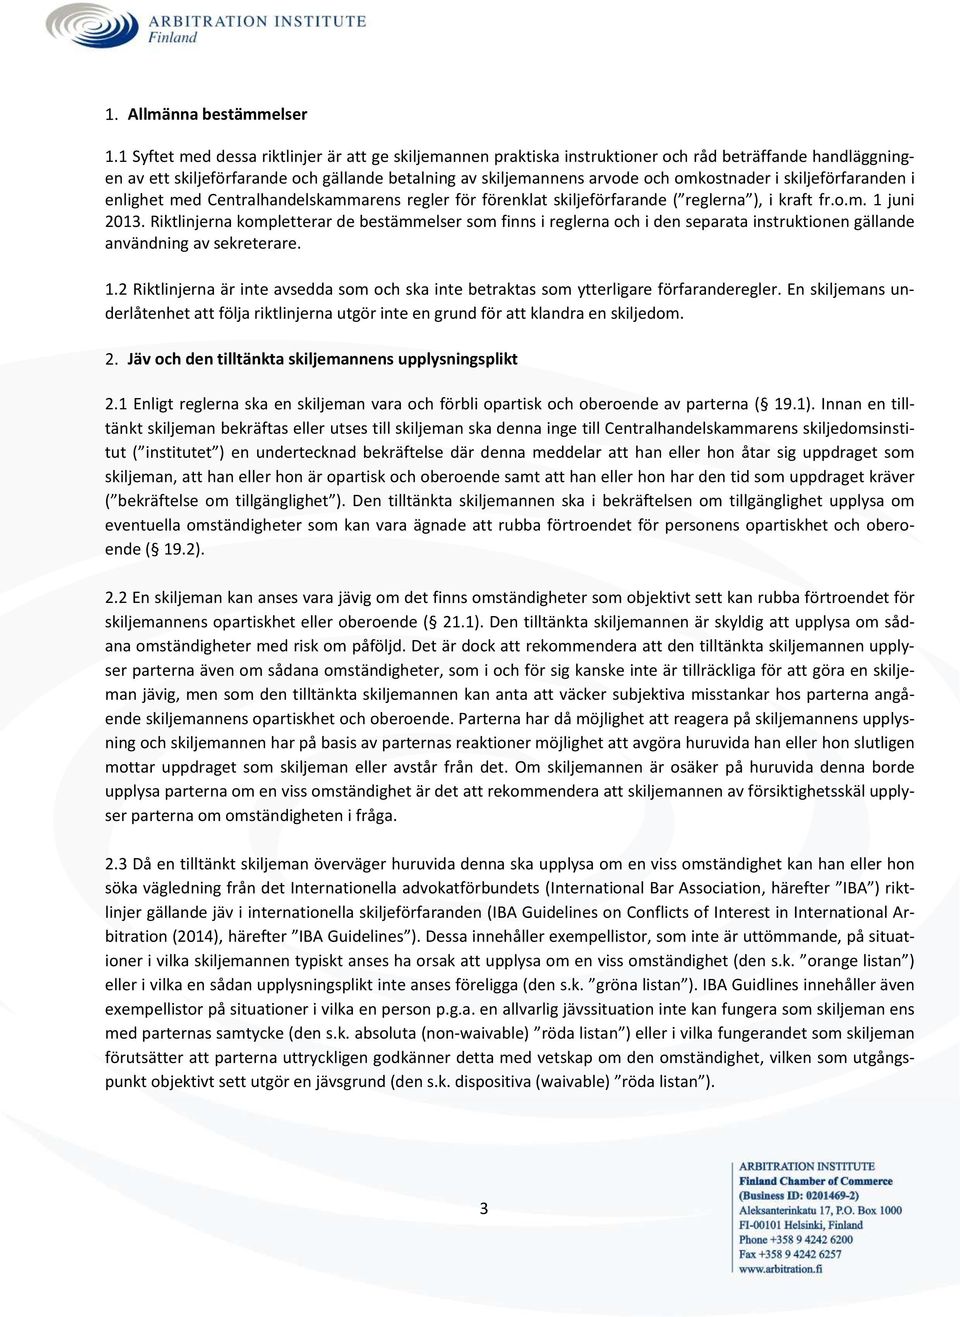 i skiljeförfaranden i enlighet med Centralhandelskammarens regler för förenklat skiljeförfarande ( reglerna ), i kraft fr.o.m. 1 juni 2013.